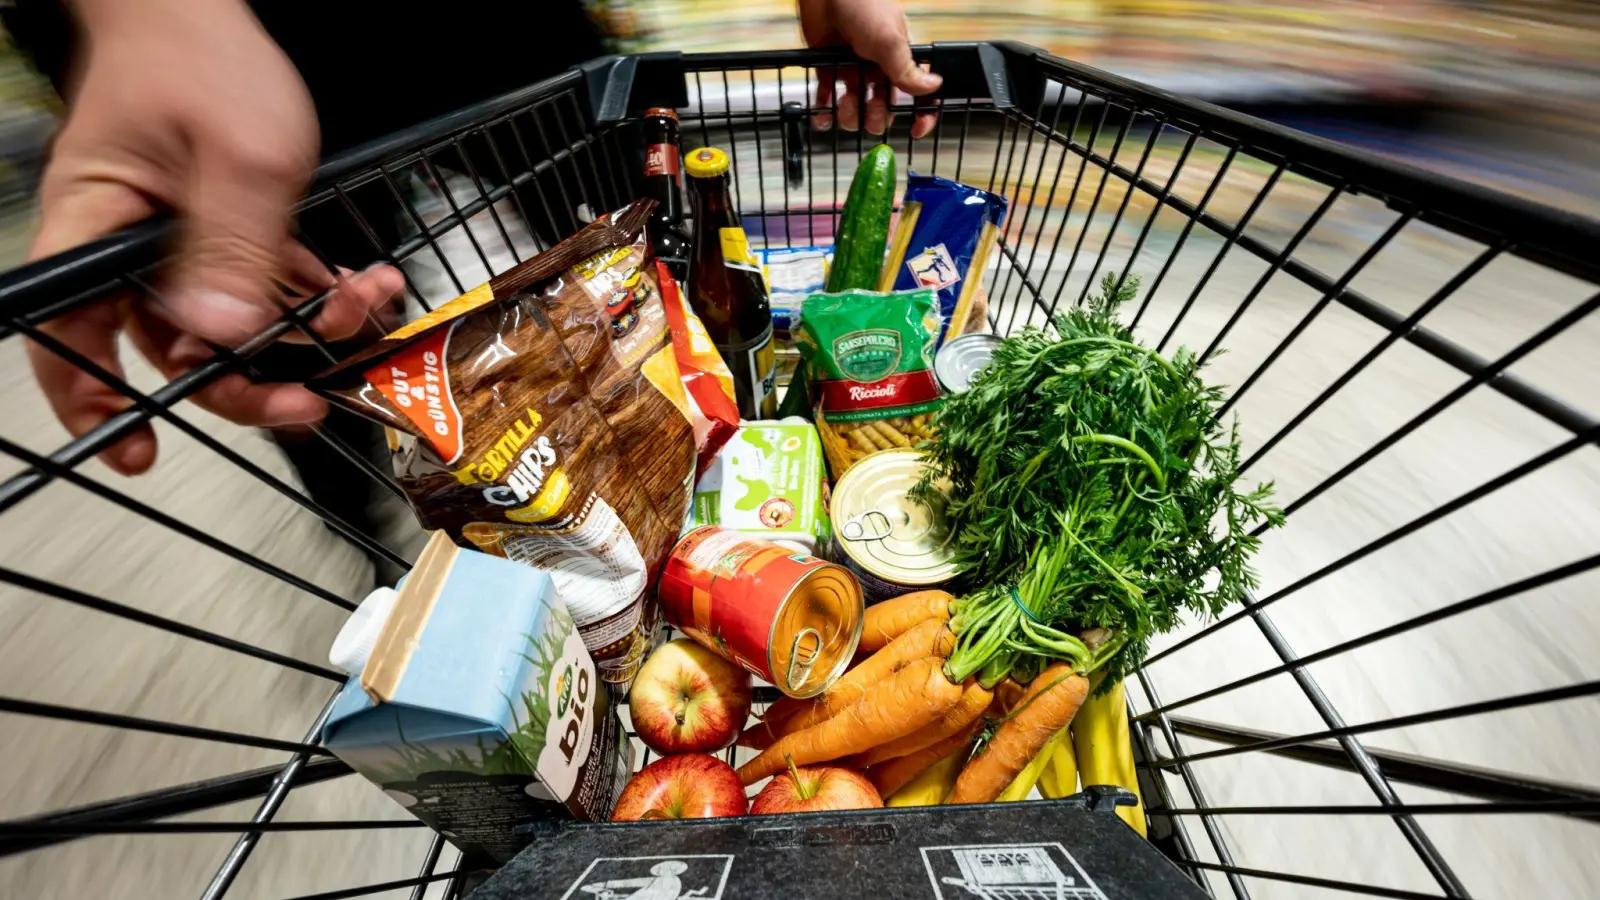 Beim Einkauf im Supermarkt lassen Kunden immer häufiger Markenartikel links liegen und greifen stattdessen zu den preisgünstigeren Eigenmarken der Handelsketten. (Foto: Fabian Sommer/dpa)